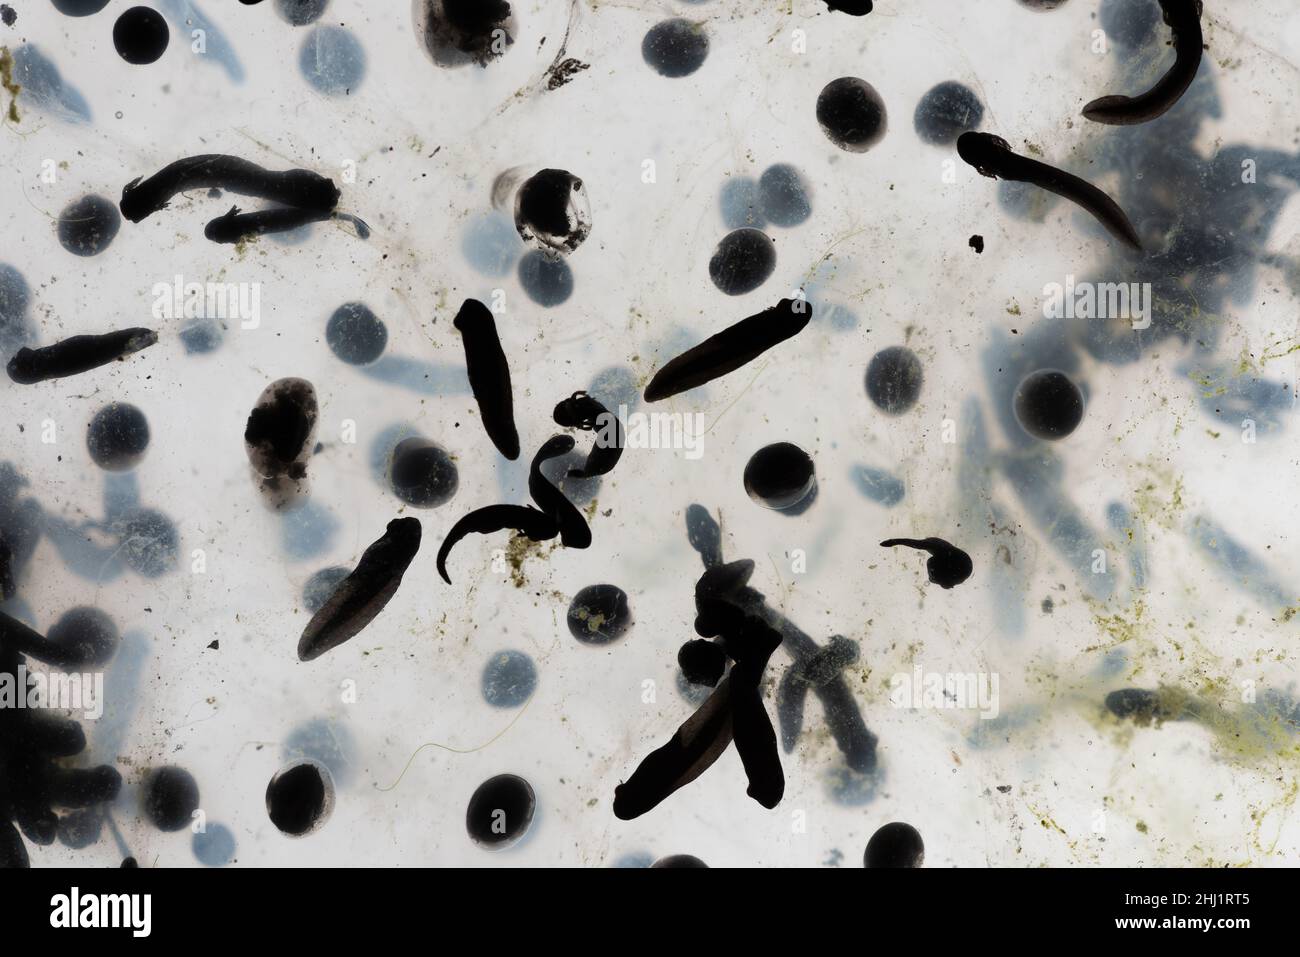 Frogspawn des gewöhnlichen Frosches Rana temporaria, verschiedene Stadien Entwicklung schwarze Punkte Eier von Gelee wie Substanz Blastula entwickelt Algen umgeben Stockfoto